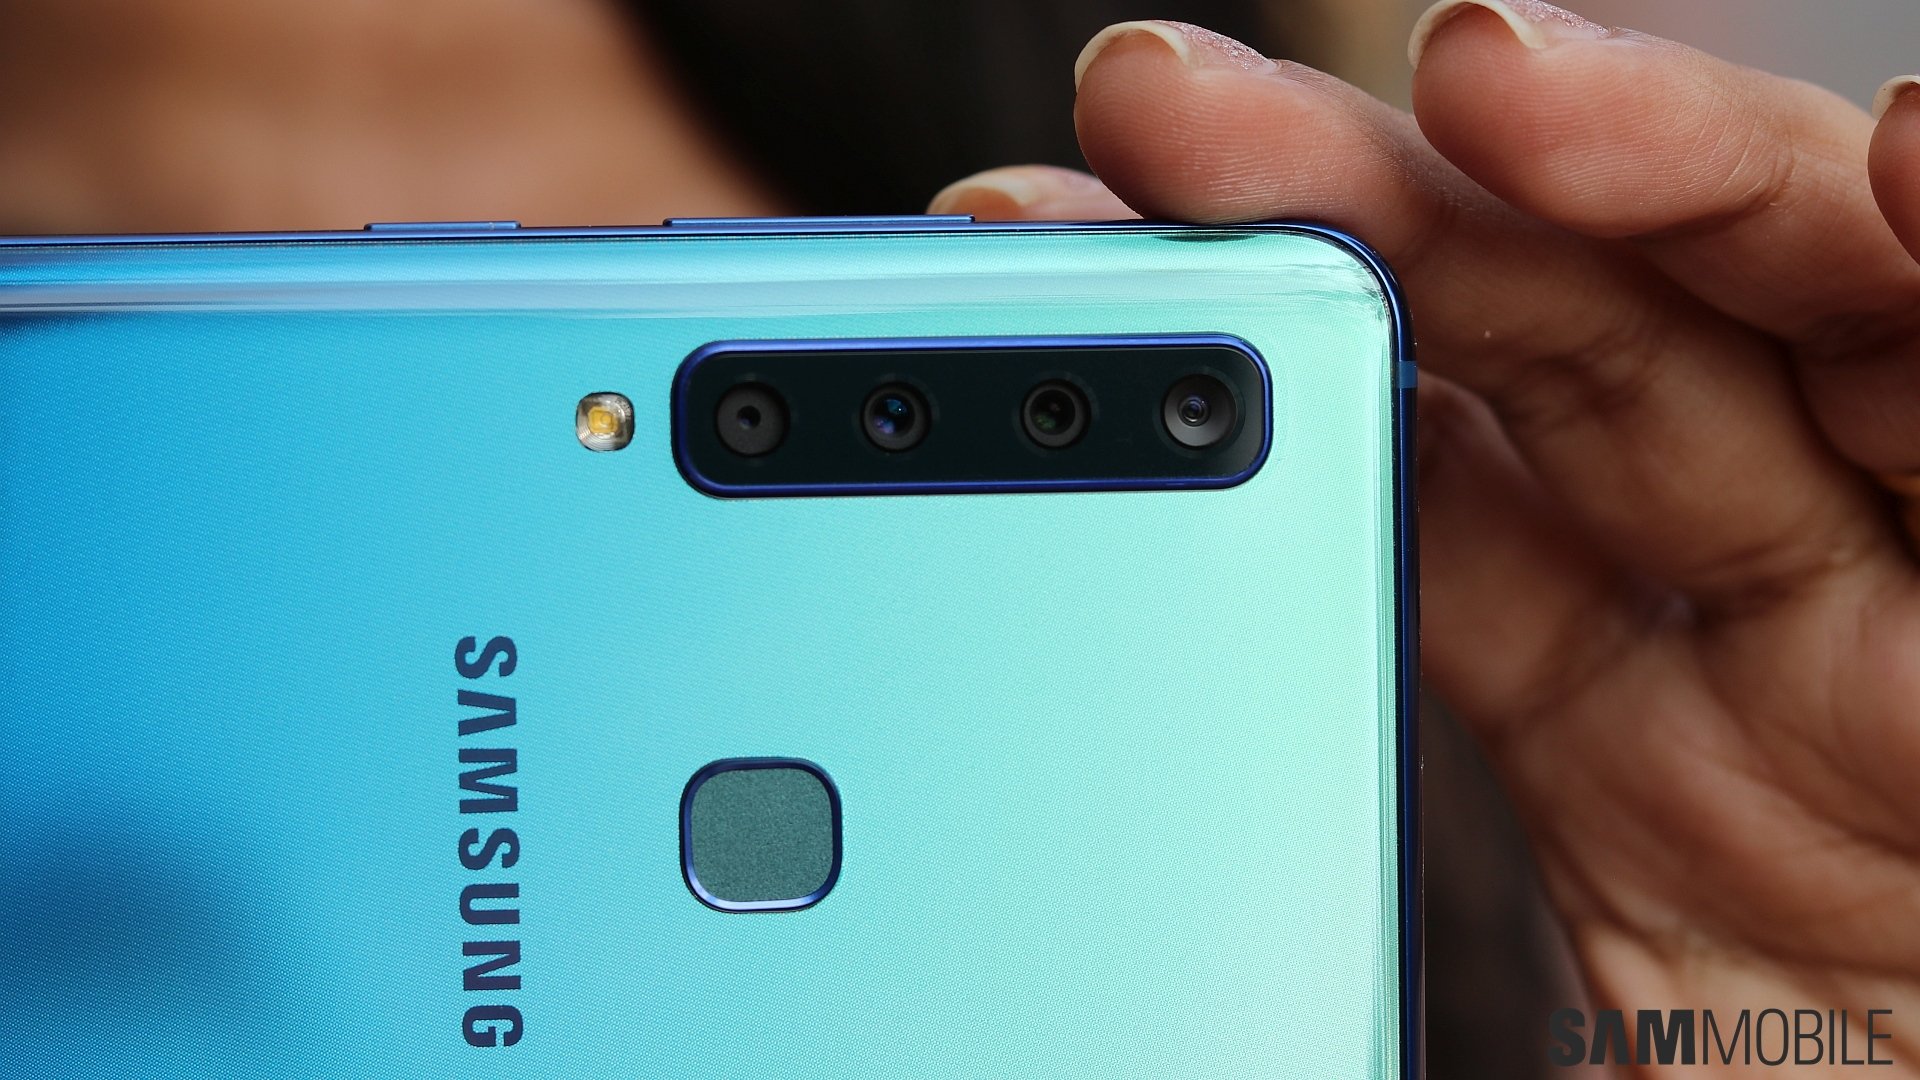 Samsung Galaxy A9 (2018) Photo Gallery